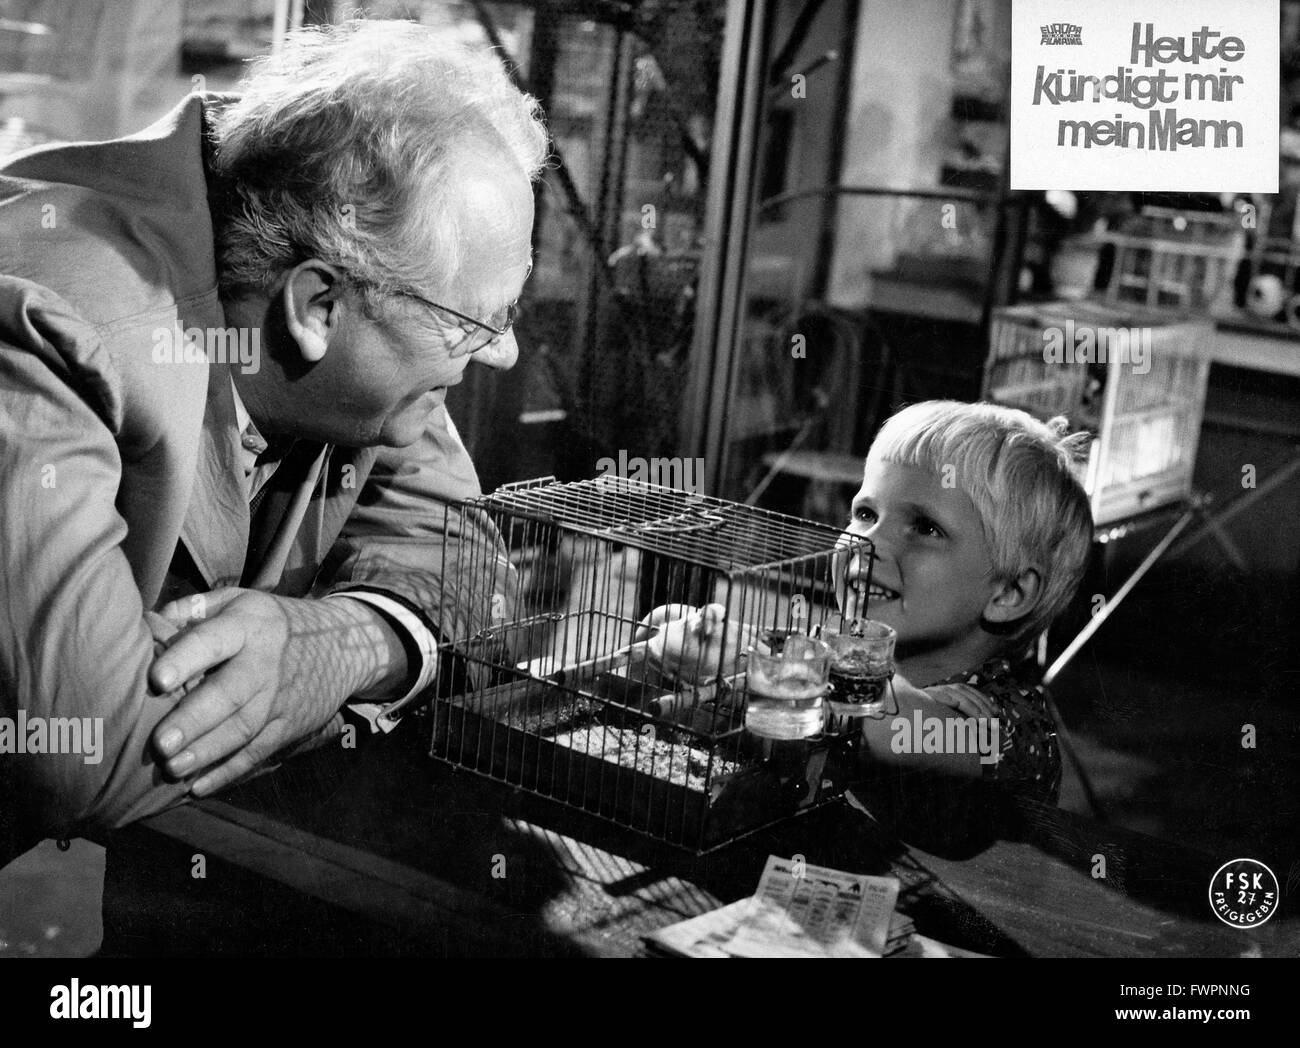 Heute kündigt mir mein Mann, Deutschland 1963, Regie: Peter Goldbaum, Rudolf Nussgruber, Darsteller: Gert Fröbe Stock Photo